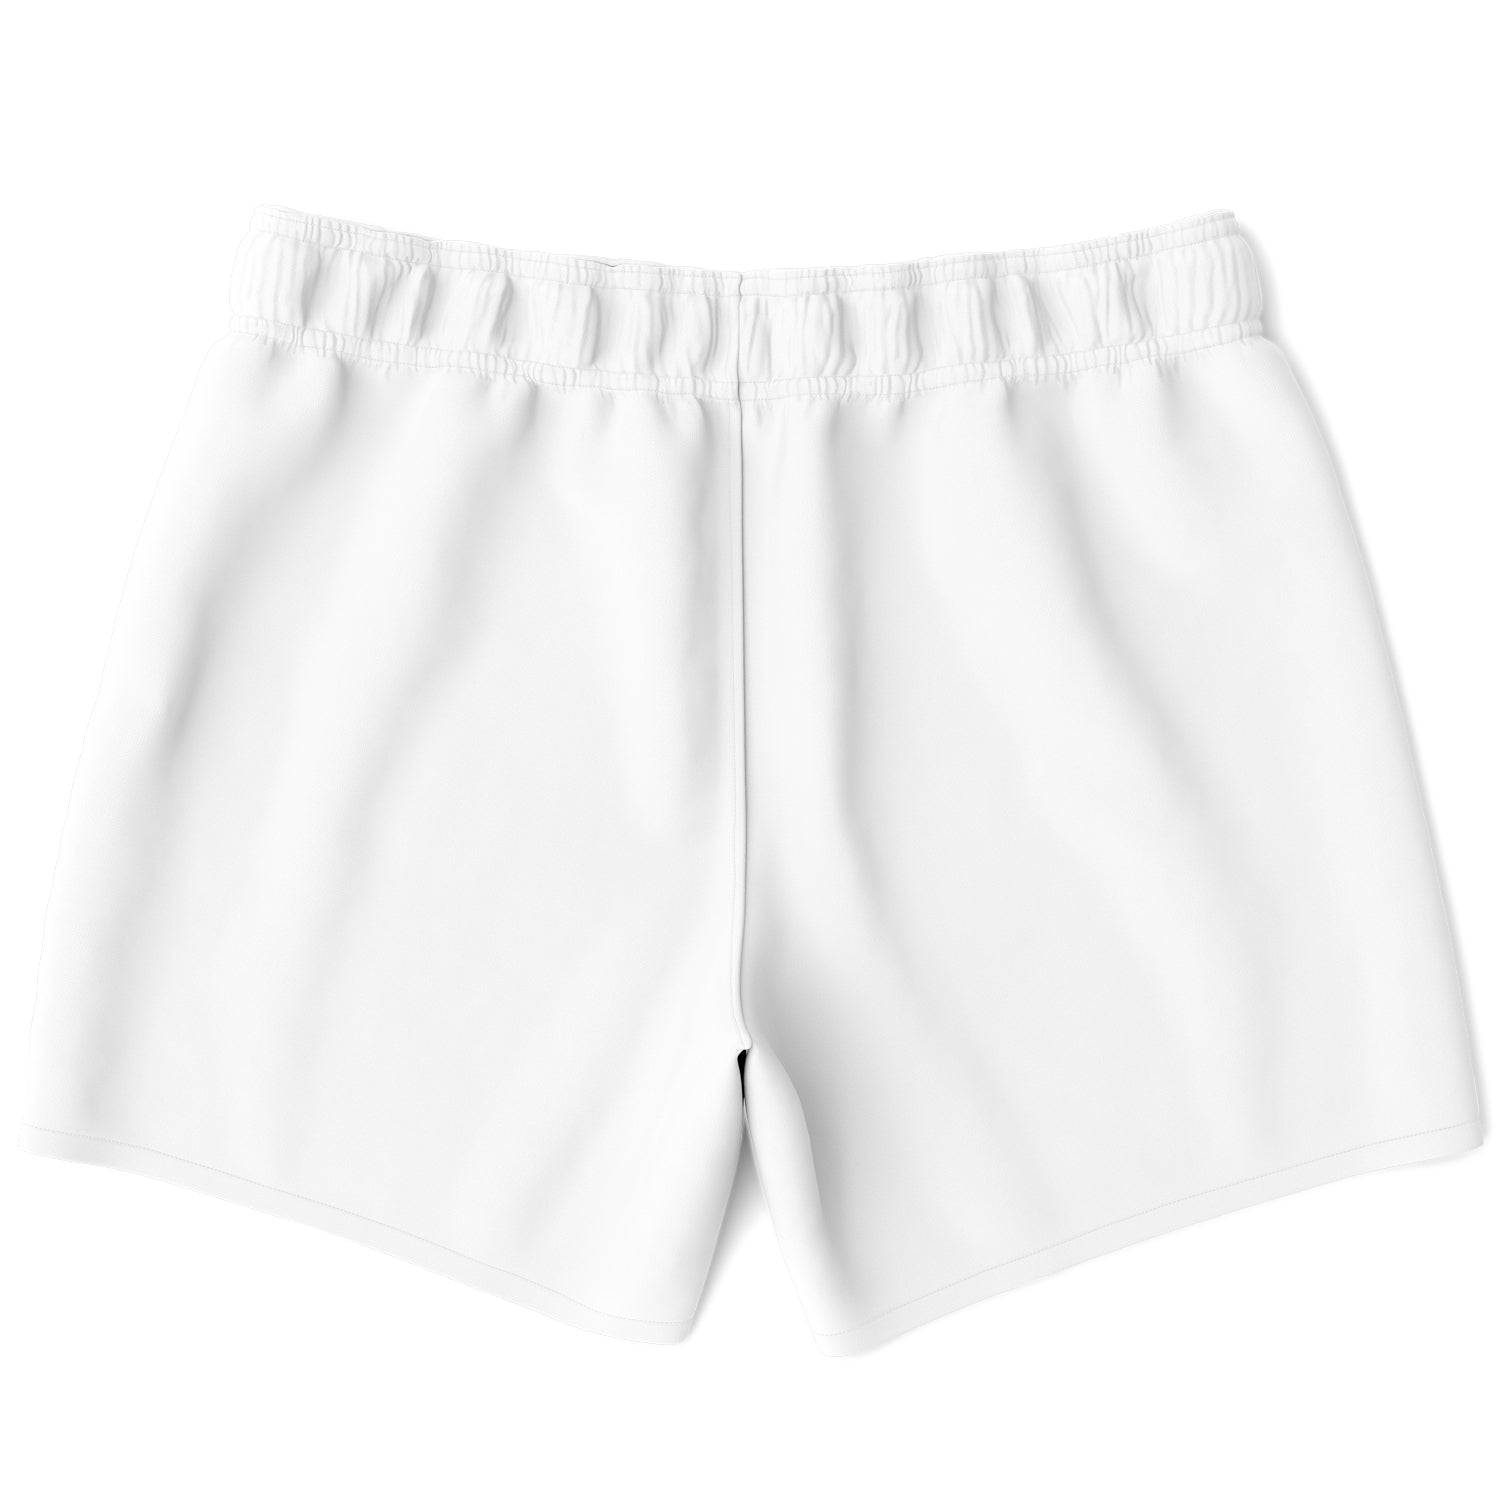 SADA Swim Shorts - White